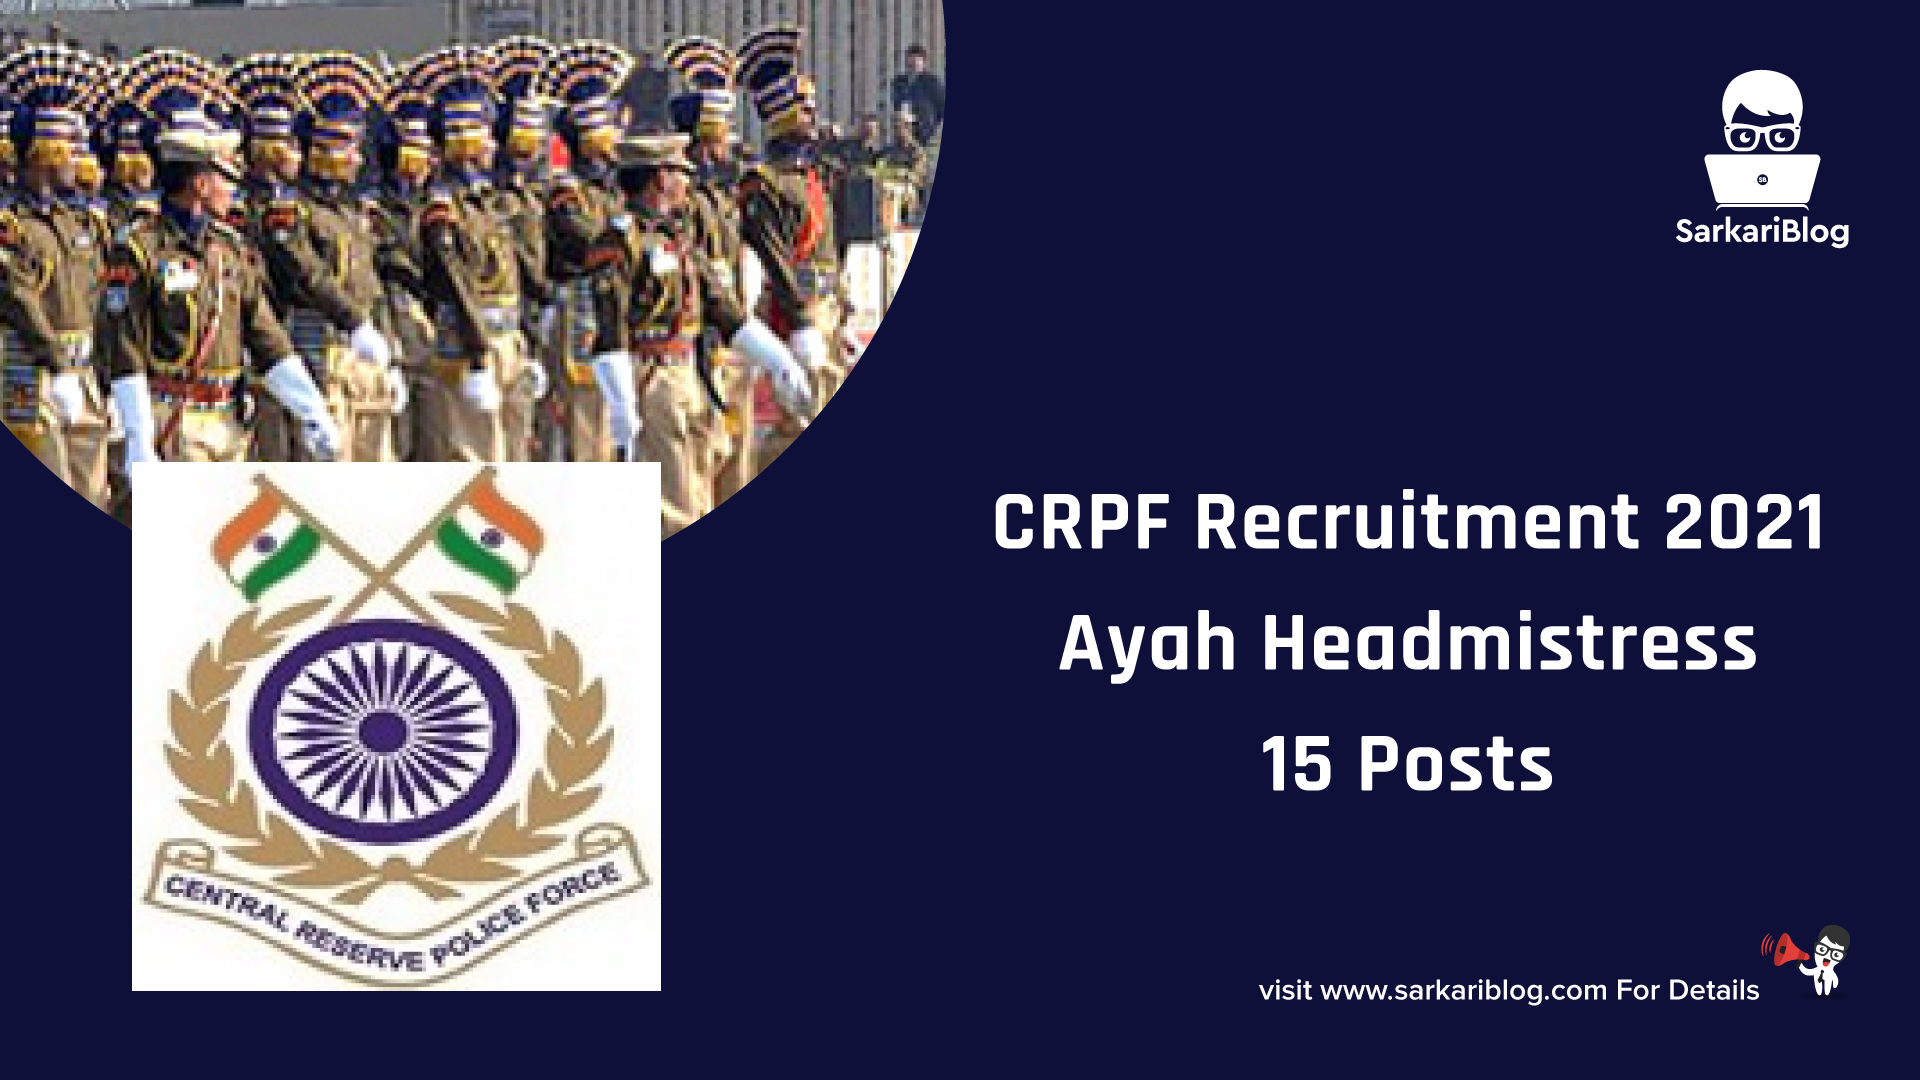 CRPF Recruitment 2021 – Ayah Headmistress, 15 Posts